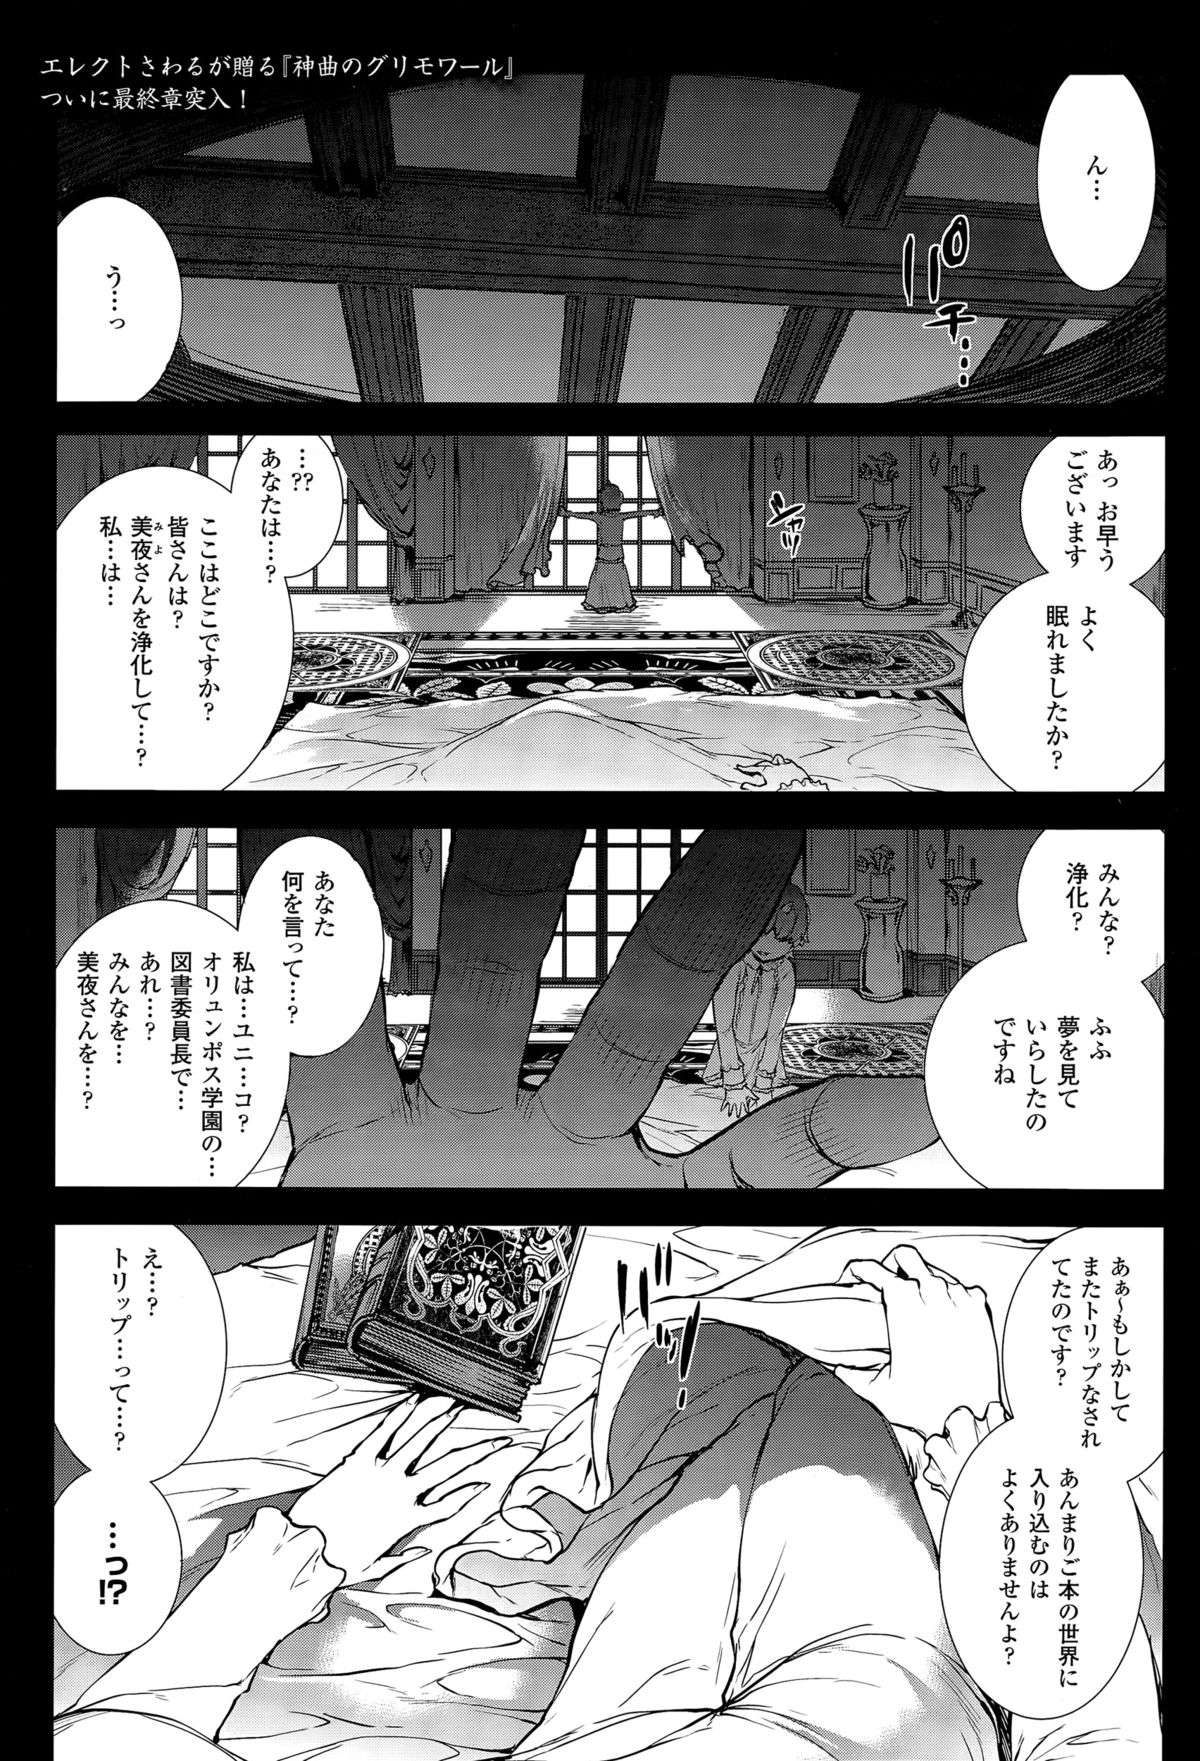 [エレクトさわる] 神曲のグリモワール －PANDRA saga 2nd story 第十三節 - 第二十節